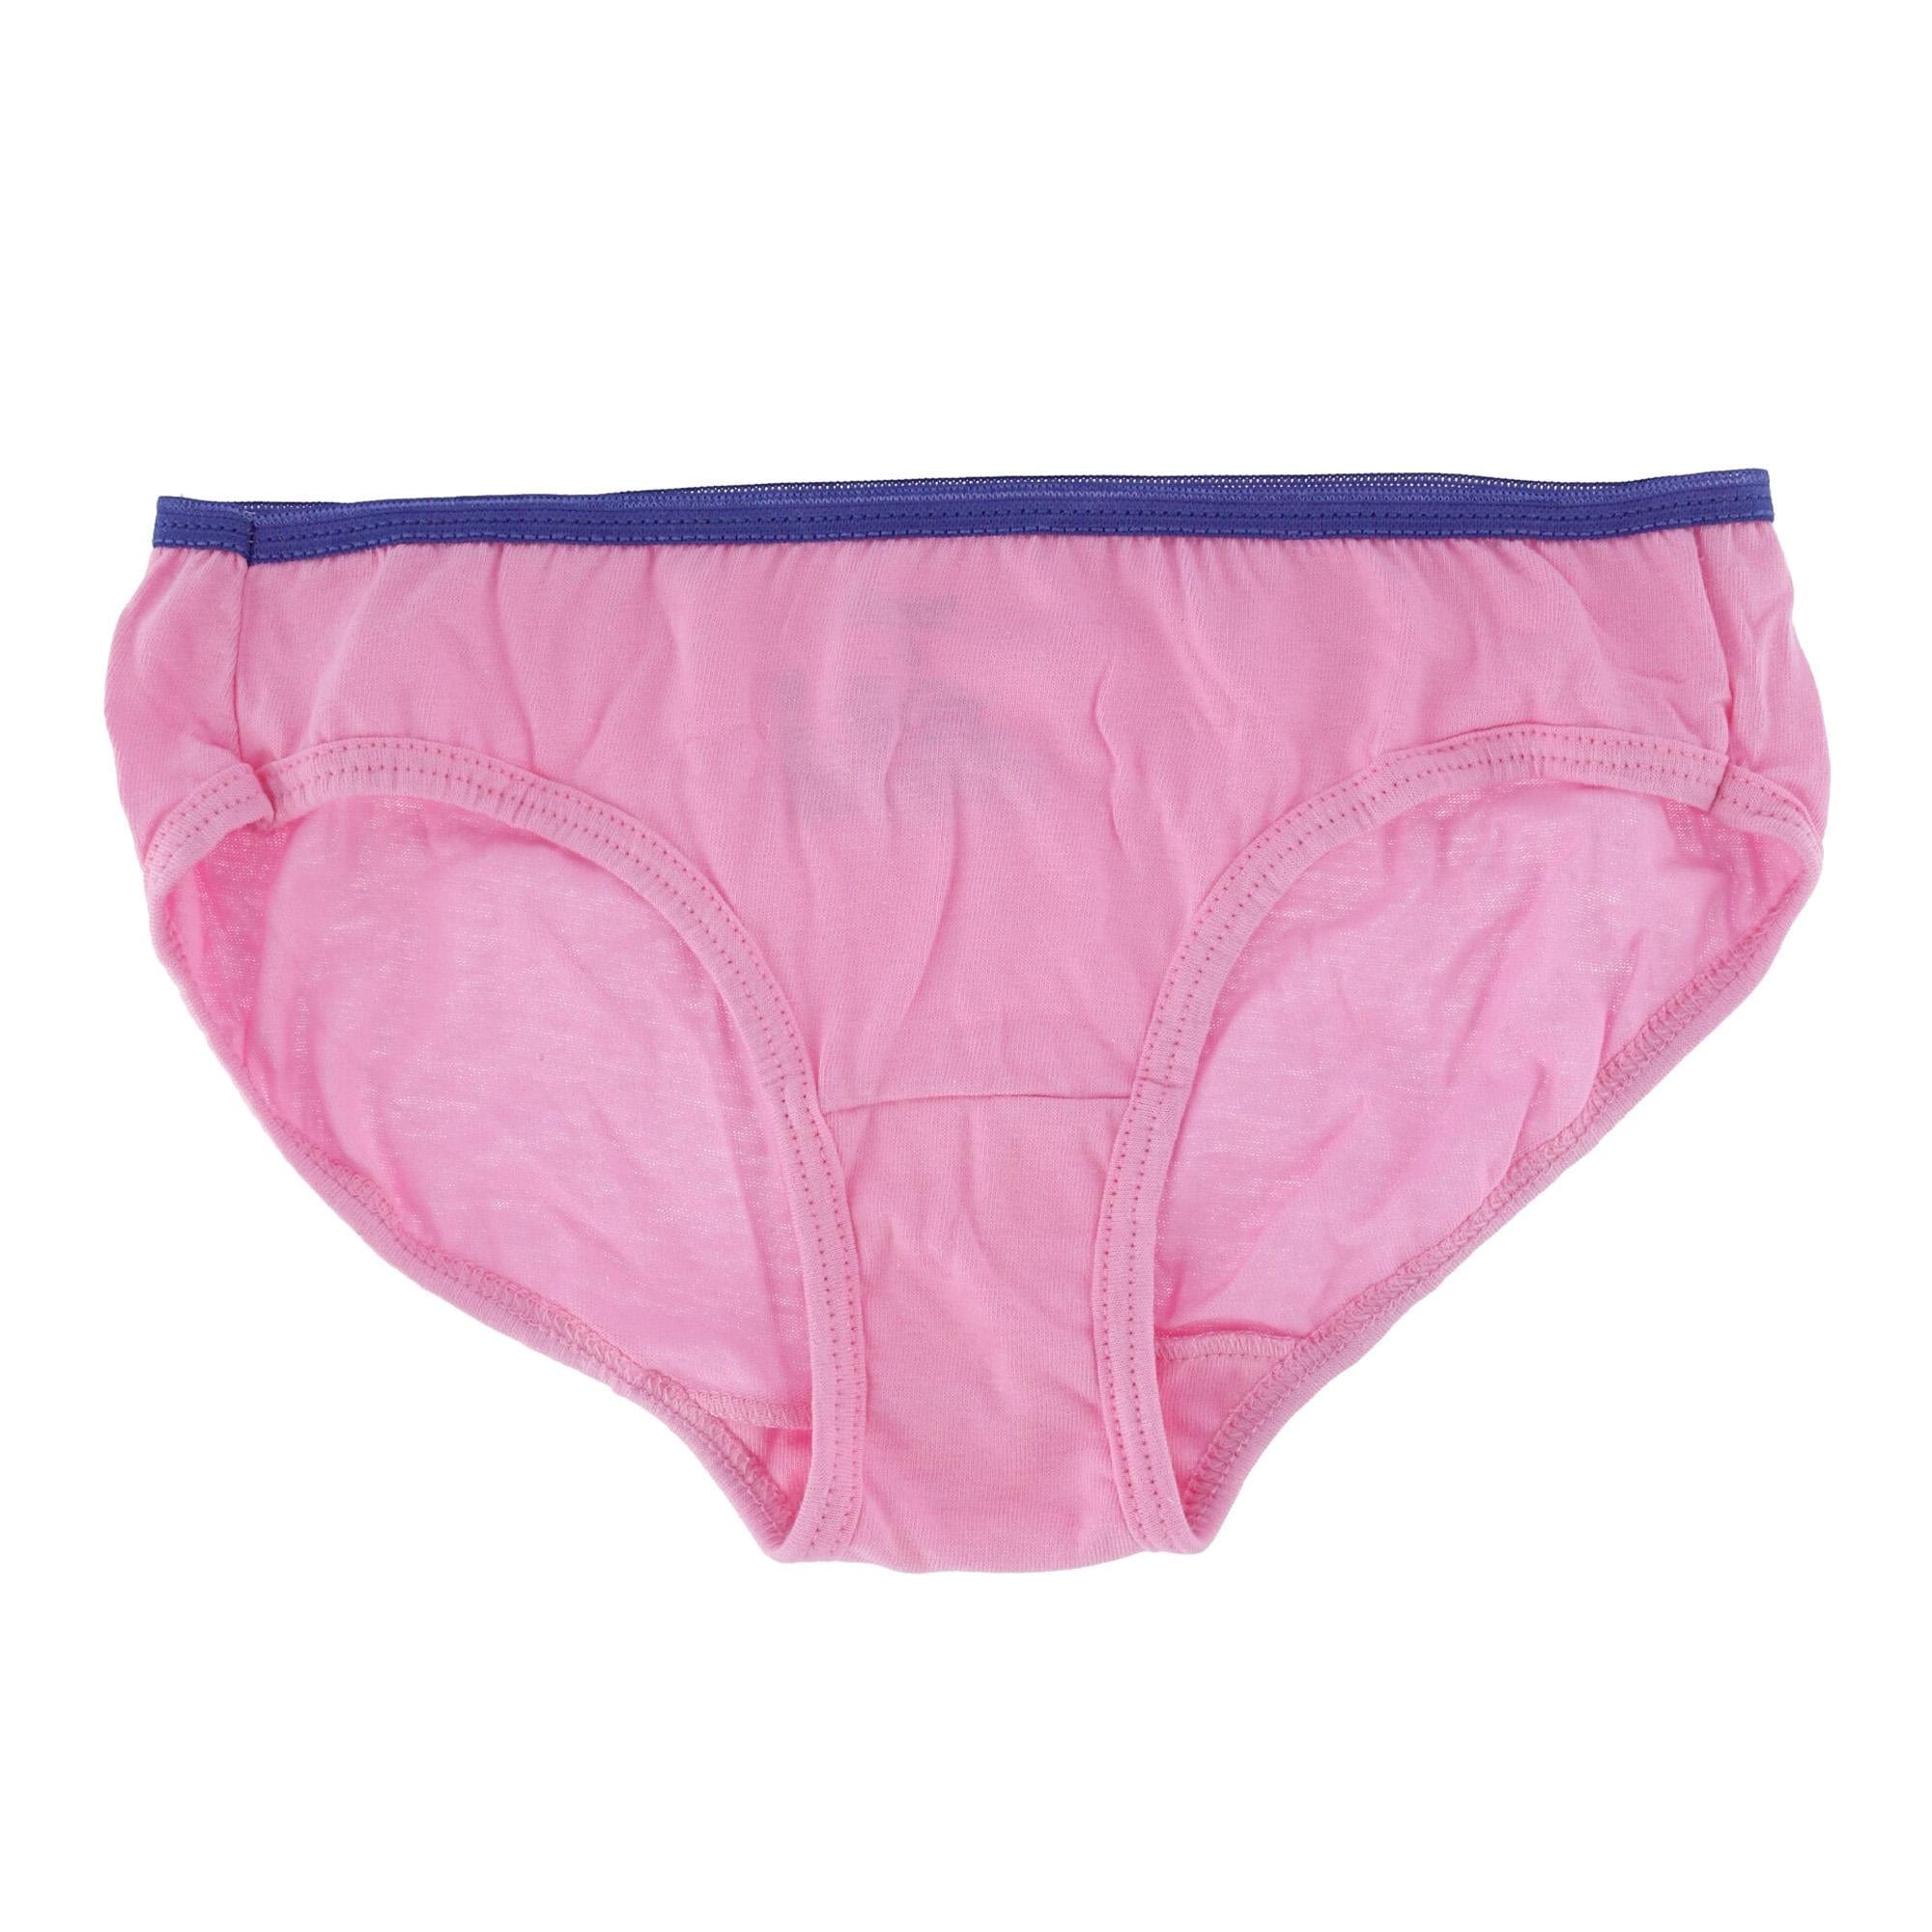 Hanes Women's Cotton High Waist Brief Underwear, 10-Pack, Assorted